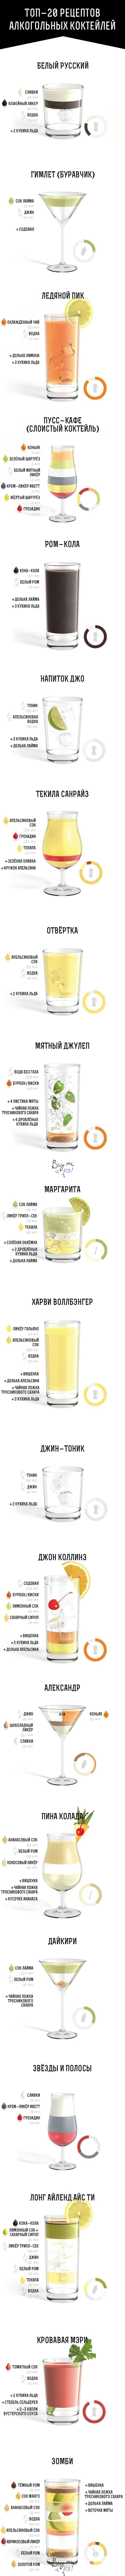 ТОП-20 лучших алкогольных коктейлей в красочной инфографике